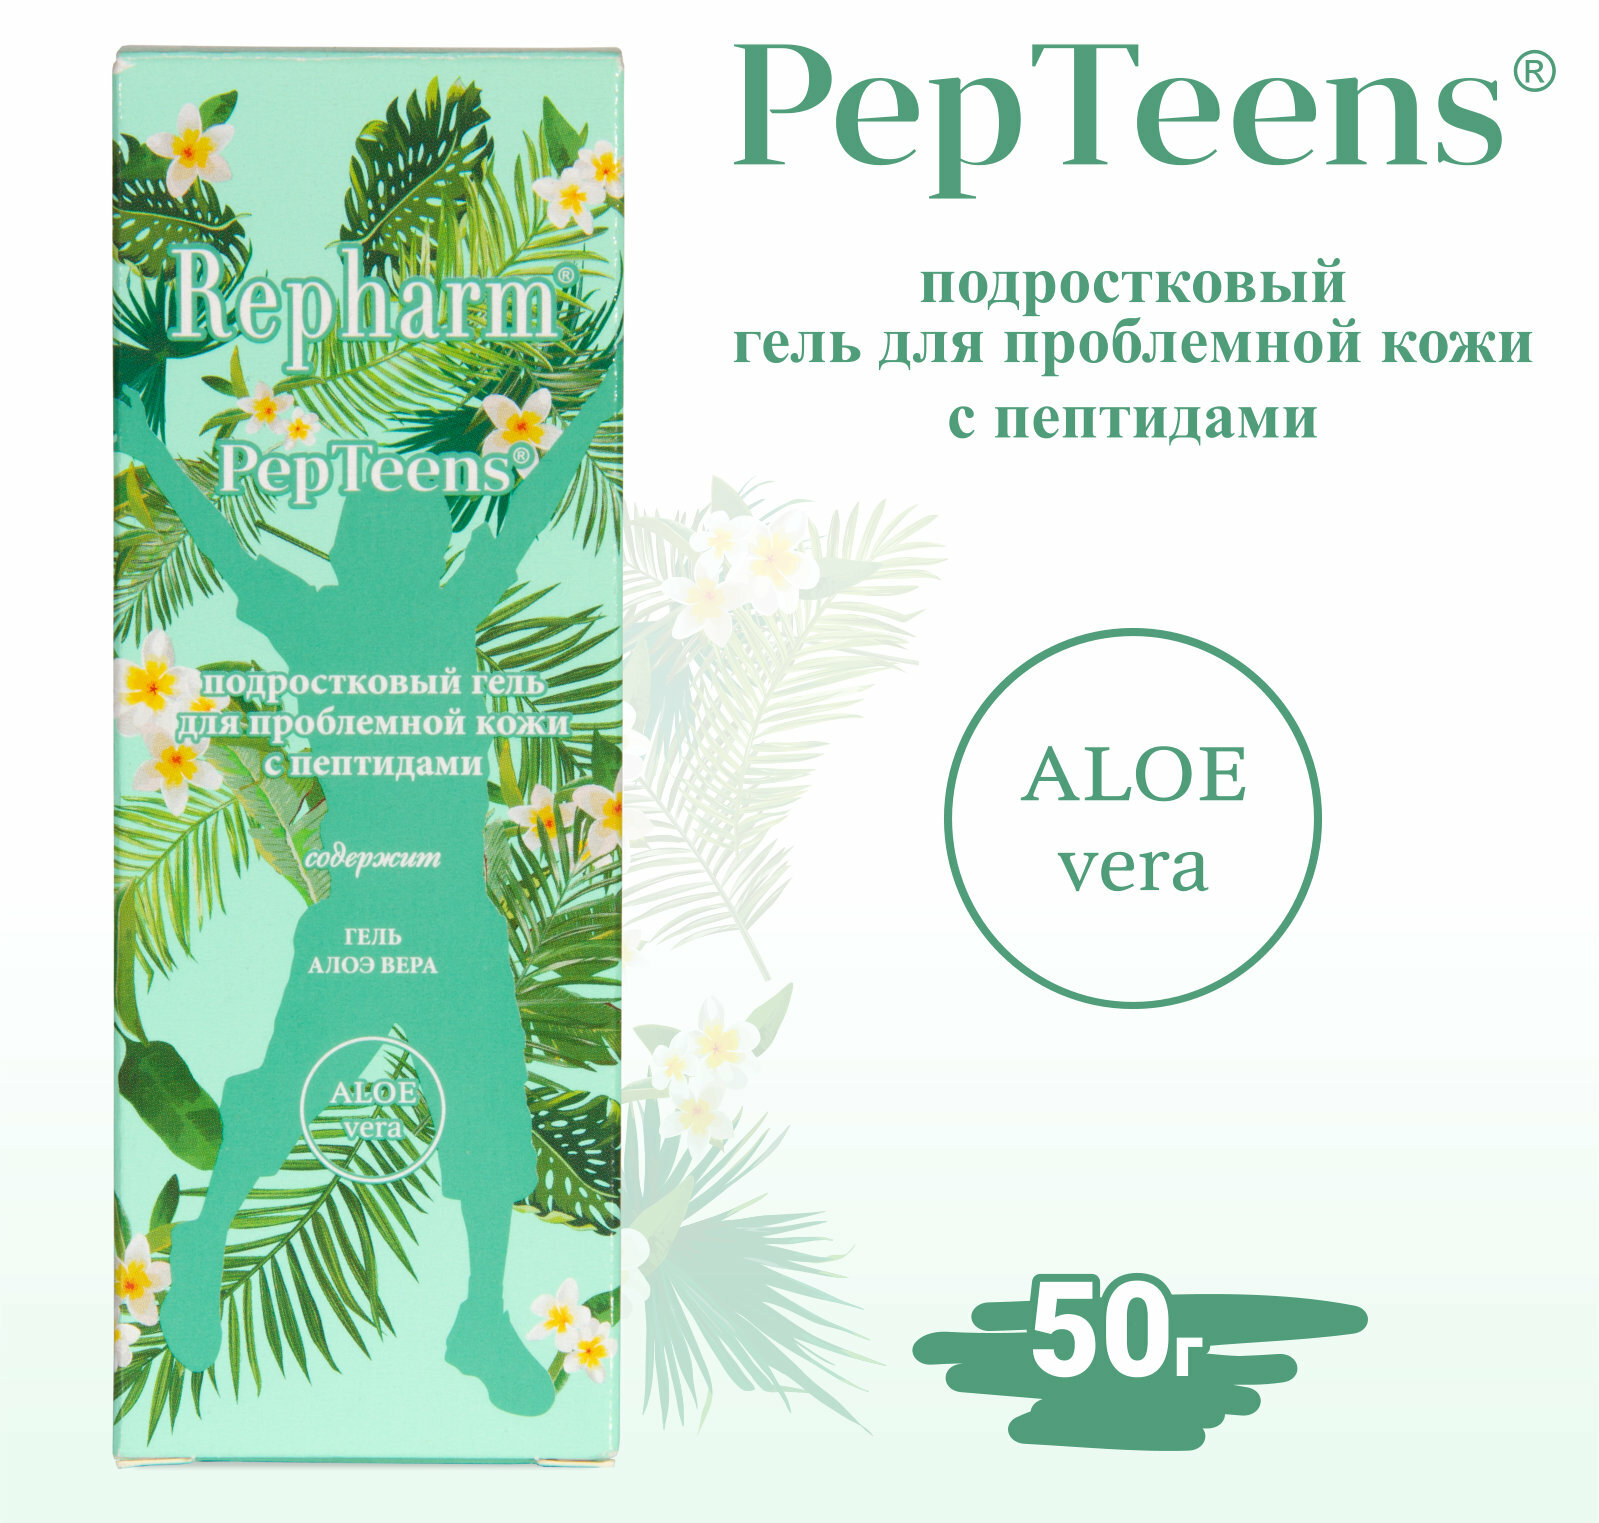 Гель для лица Repharm PepTeens для проблемной кожи с пептидами